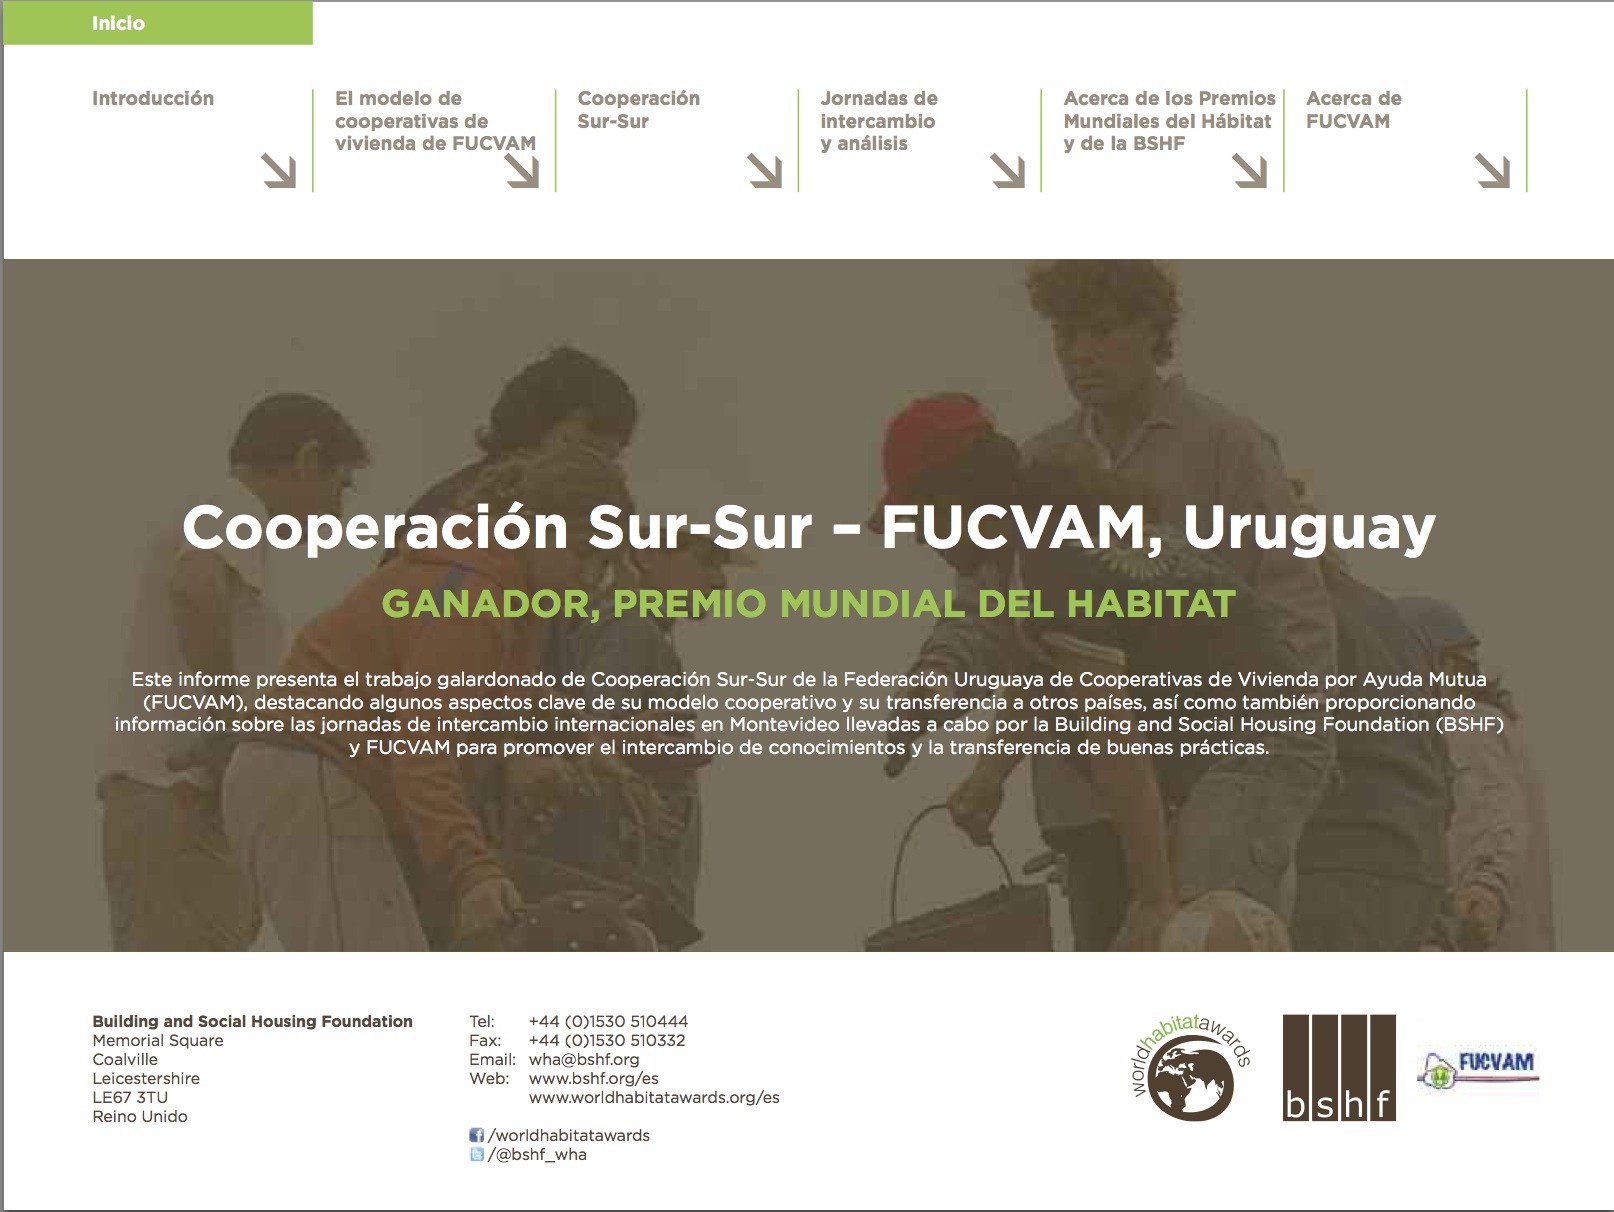 Cooperación Sur-Sur: proyección de la experiencia del ‘Modelo FUCVAM’ de cooperativas de vivienda por ayuda mutua’ informe de las jornadas de intercambio